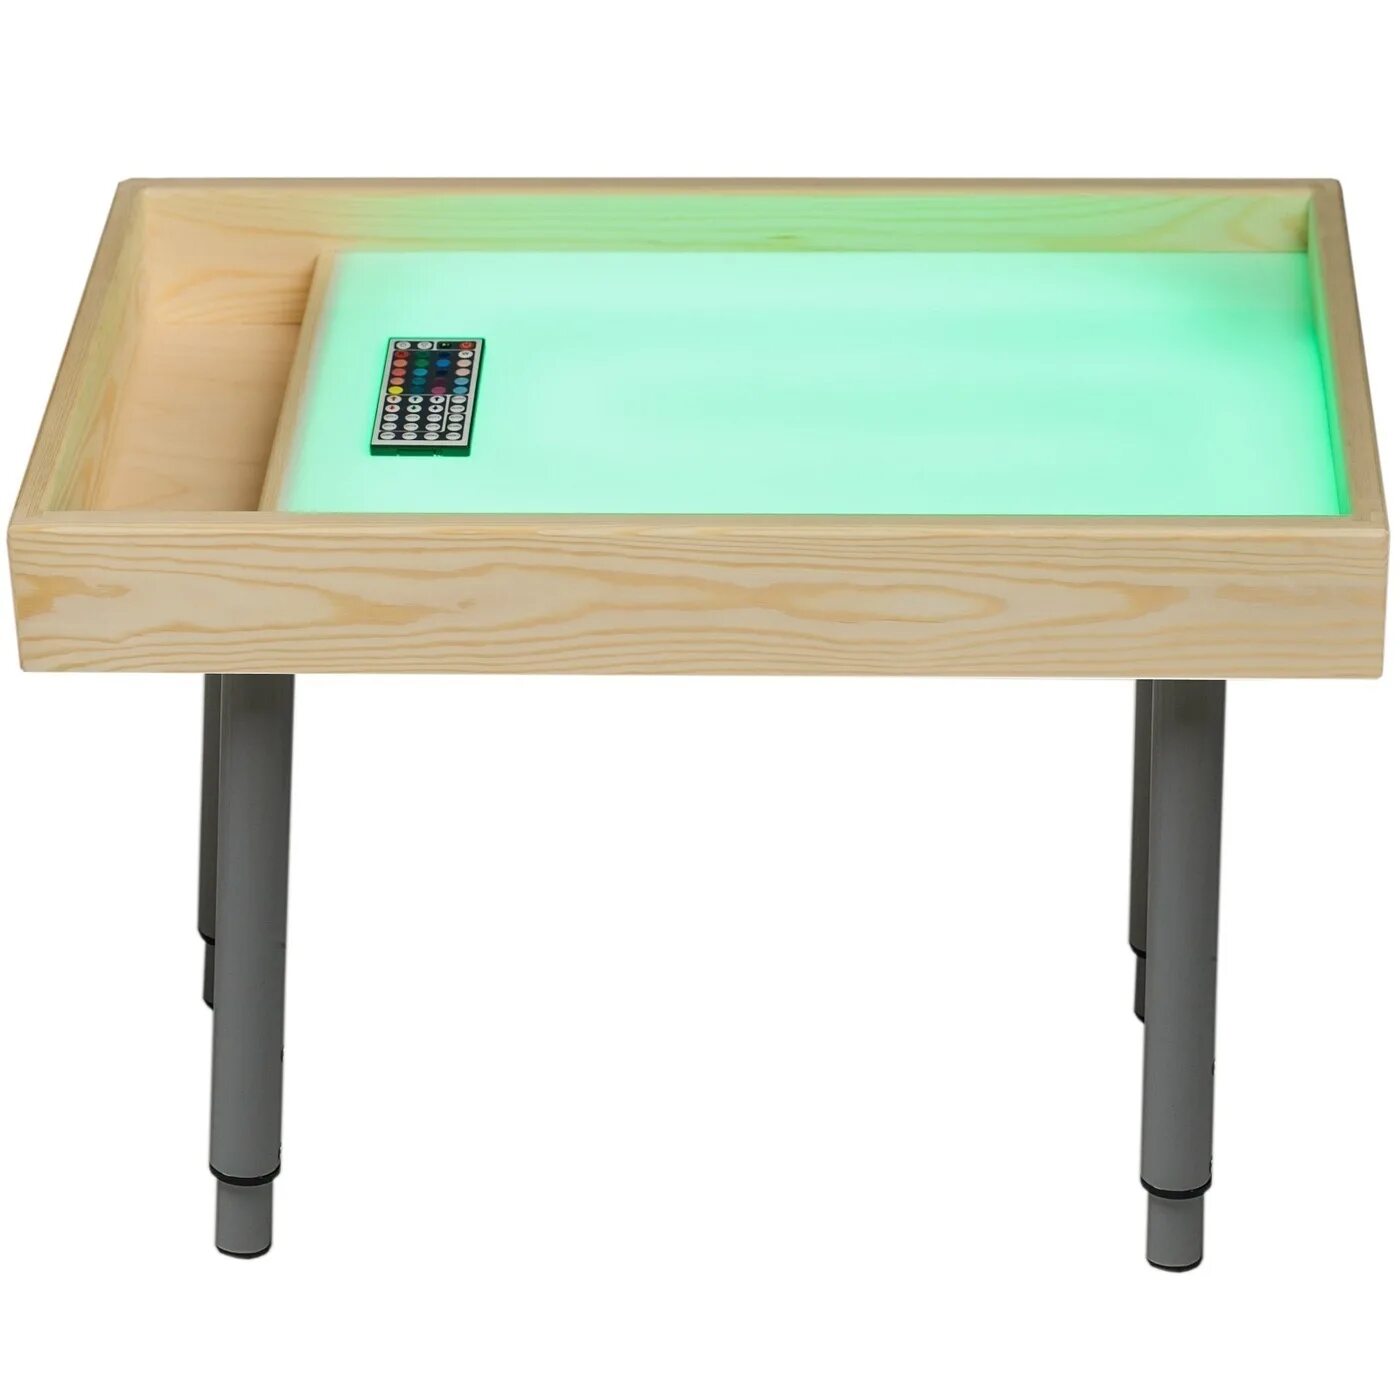 Детские столы песка. Световой стол-песочница 7в1 супер с цветной подсветкой (60*40см). Песочный стол (световой стол для рисования песком). Планшет для рисования песком "макси с отсеком". Стол для песка с подсветкой.